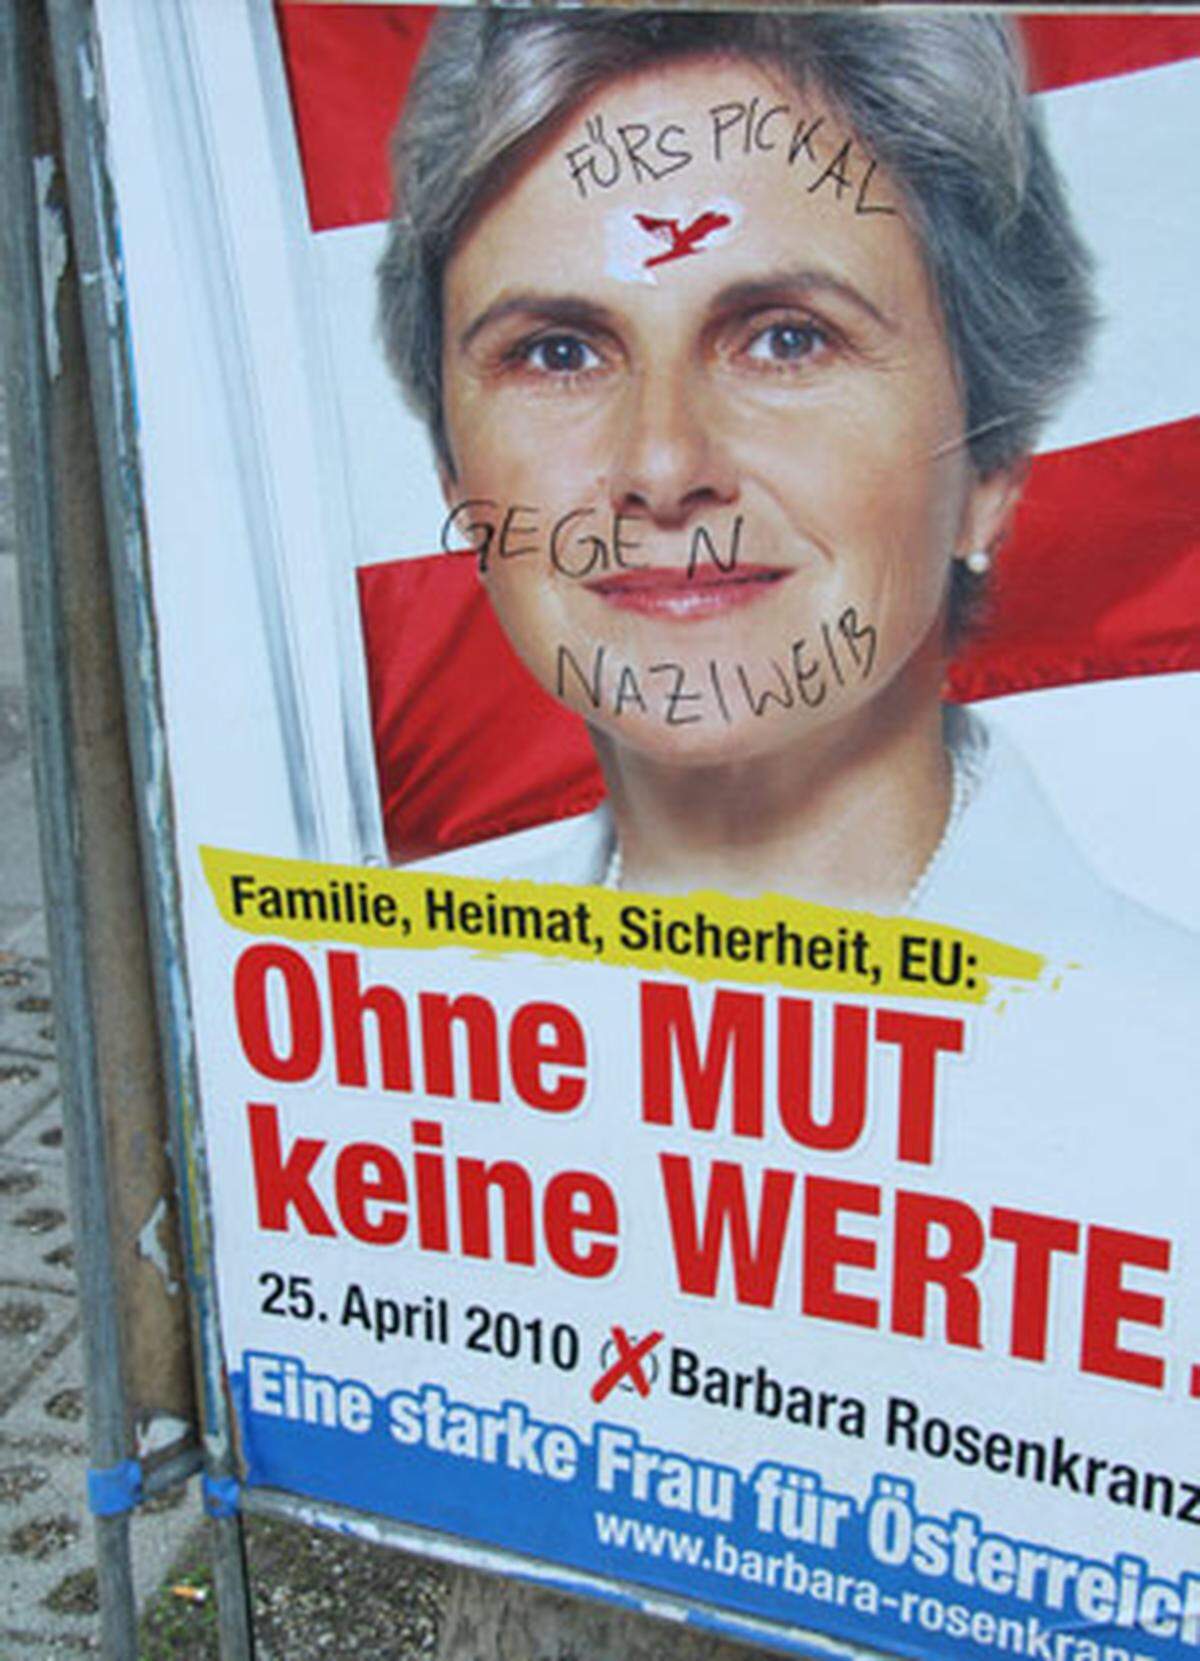 ...und hier auf einem Dreiecksständer mit der FP-Hofburgkandidatin Barbara Rosenkranz. Wobei in diesem Fall sehr untergriffig und frauenfeindlich agiert wird.